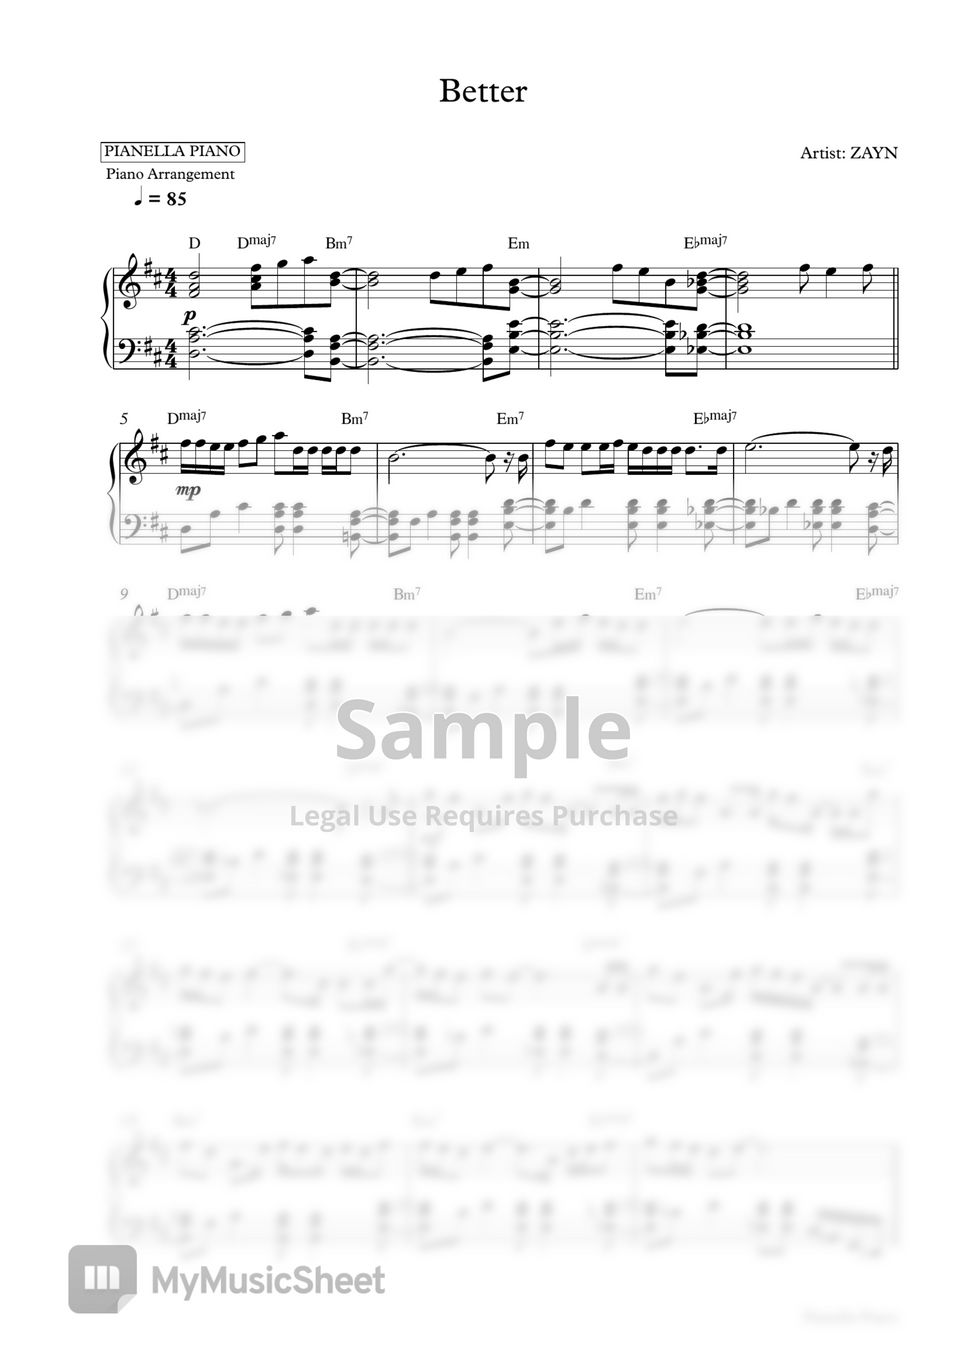 ZAYN - Better (Piano Sheet) by Pianella Piano